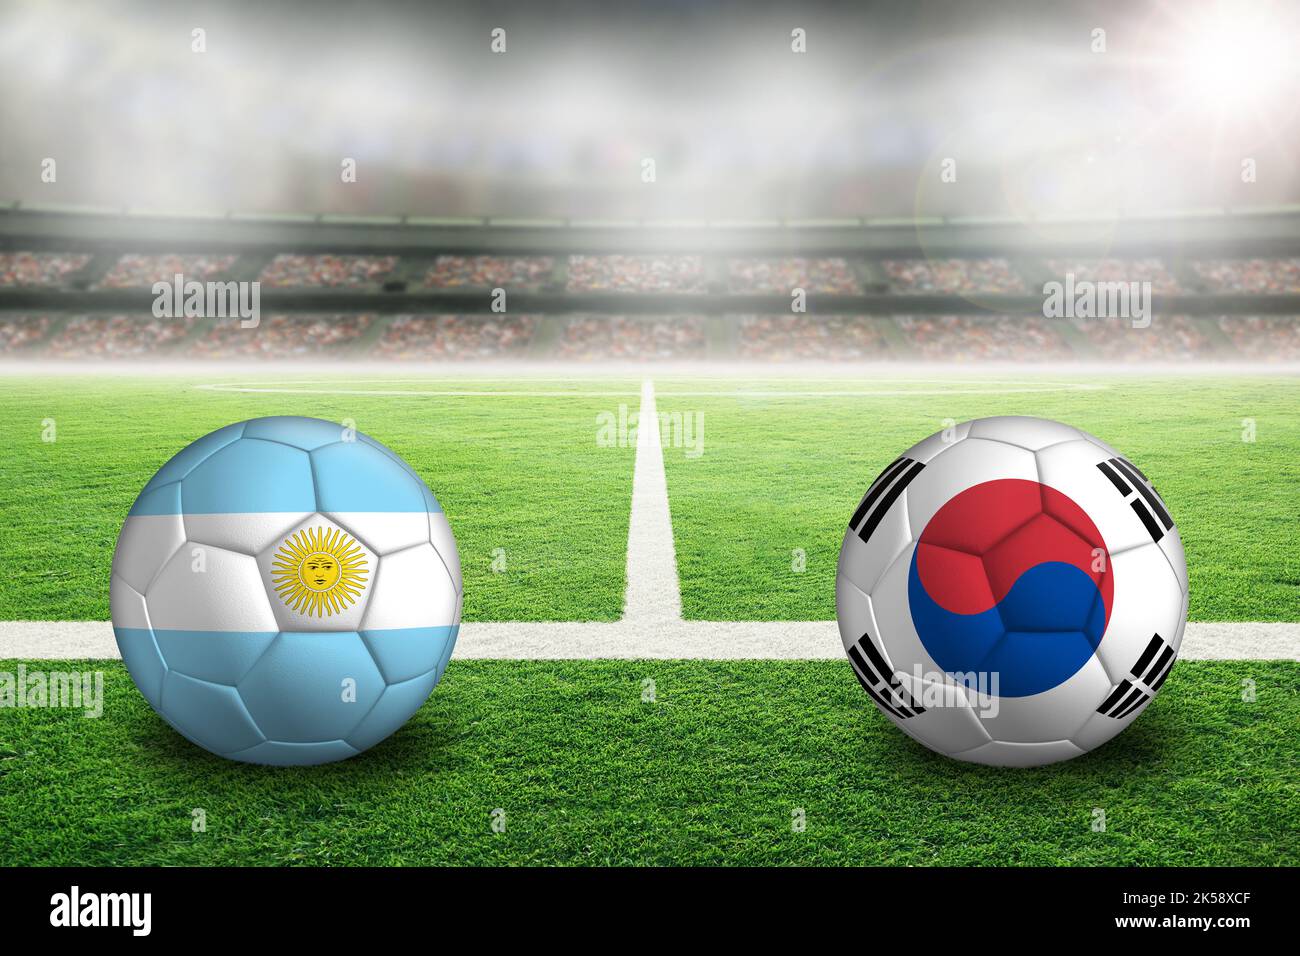 Uruguay contre la République de Corée football dans un stade en plein air lumineux avec des drapeaux sud-coréens et uruguayens peints. Concentrez-vous sur le premier plan et le ballon de football Banque D'Images